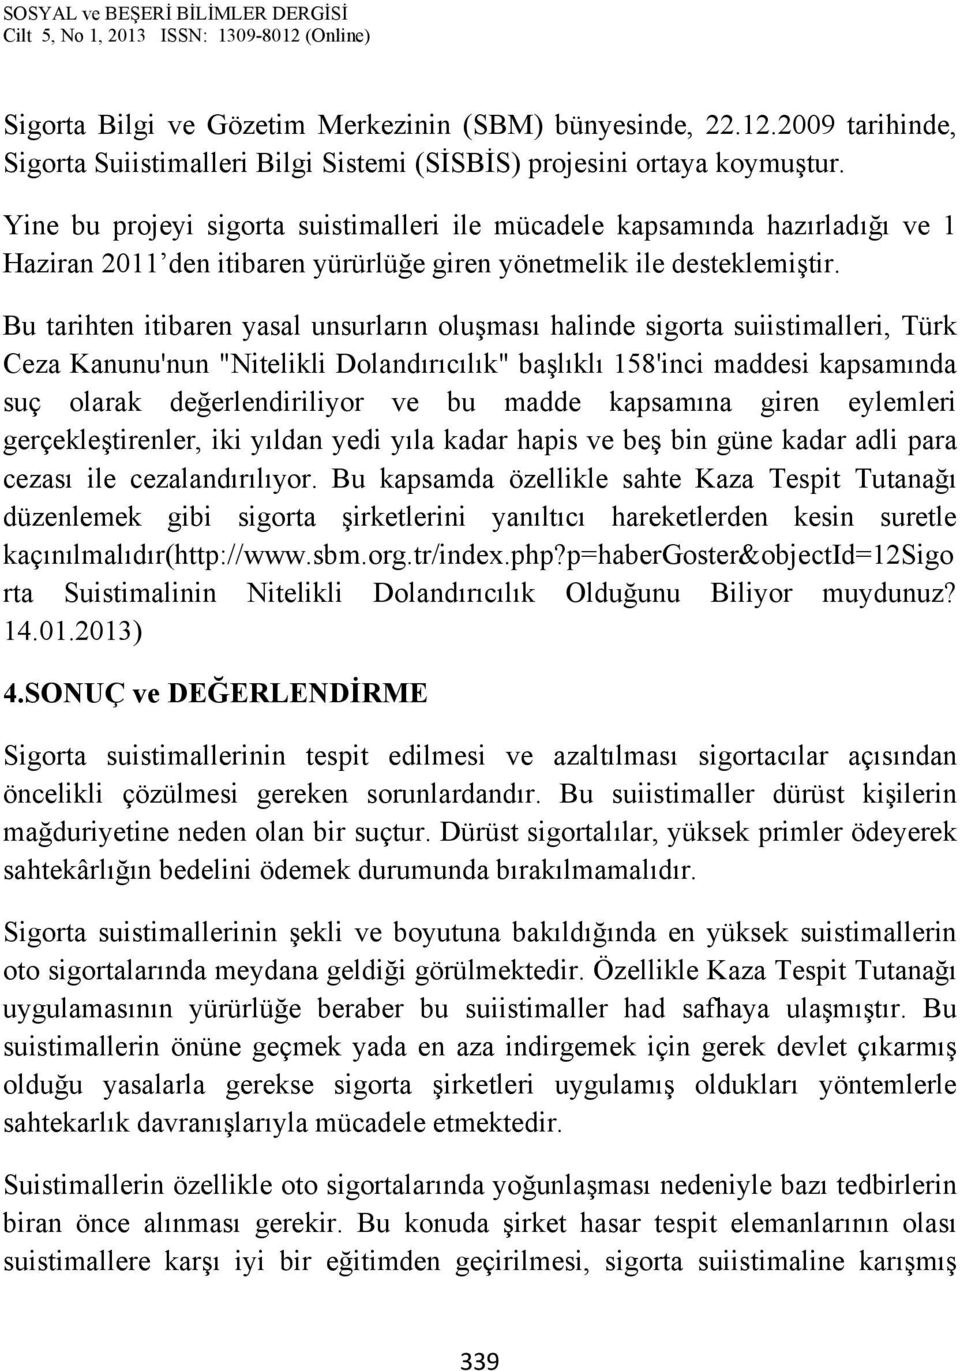 Bu tarihten itibaren yasal unsurların oluşması halinde sigorta suiistimalleri, Türk Ceza Kanunu'nun "Nitelikli Dolandırıcılık" başlıklı 158'inci maddesi kapsamında suç olarak değerlendiriliyor ve bu